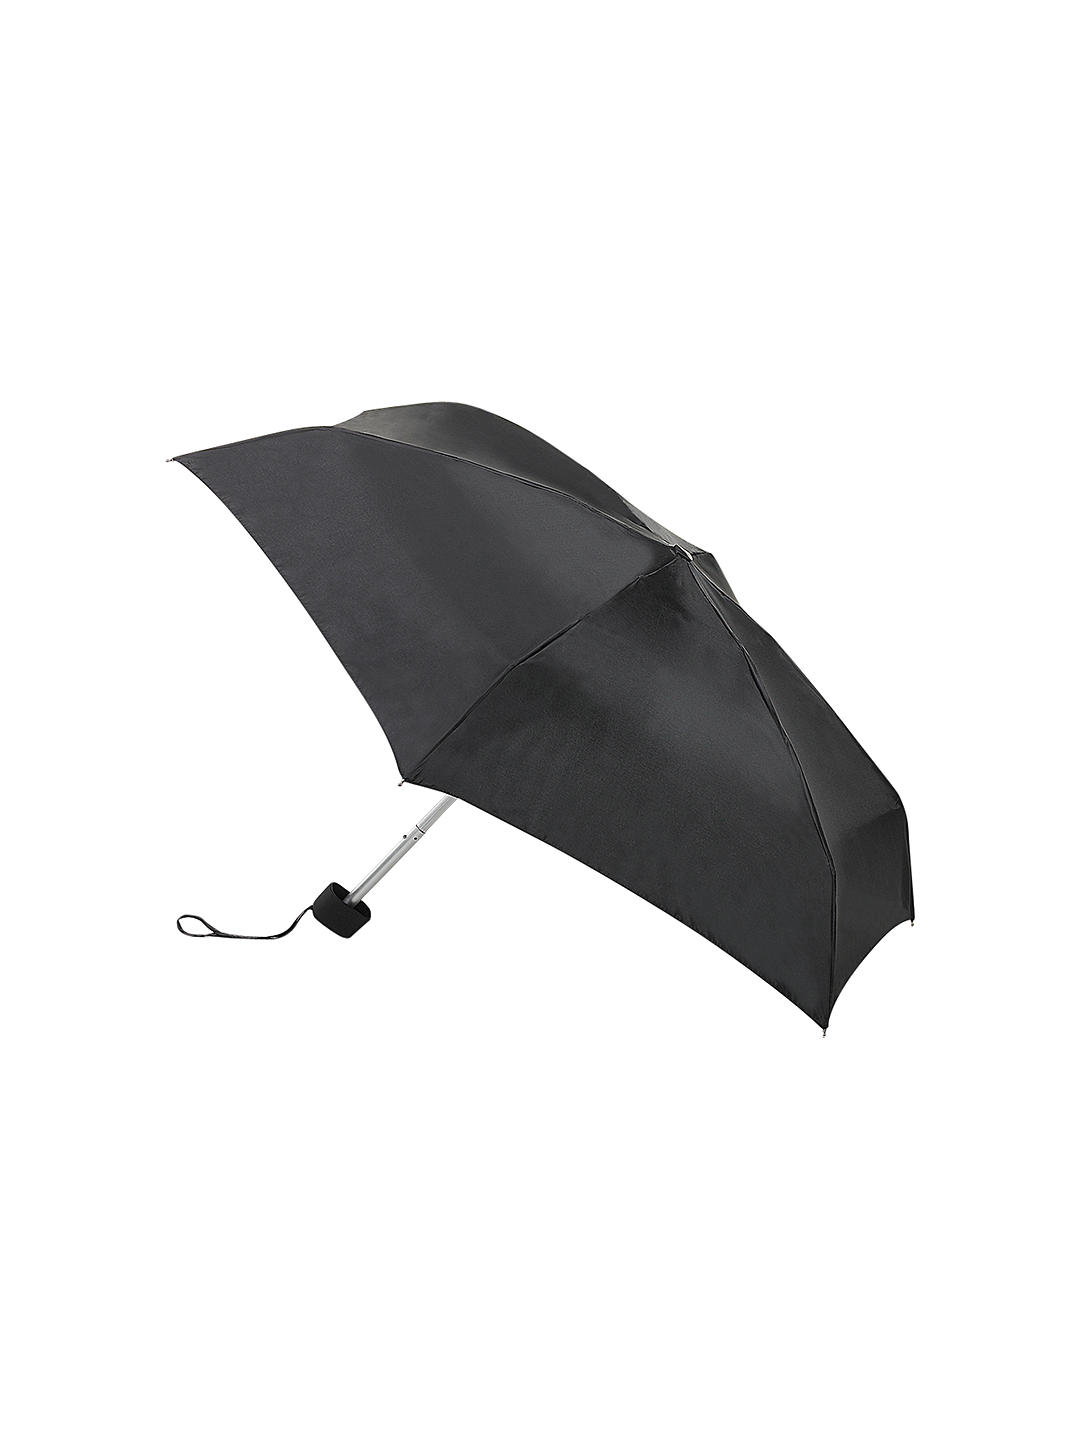 Fulton L500 Tiny Umbrella, Black